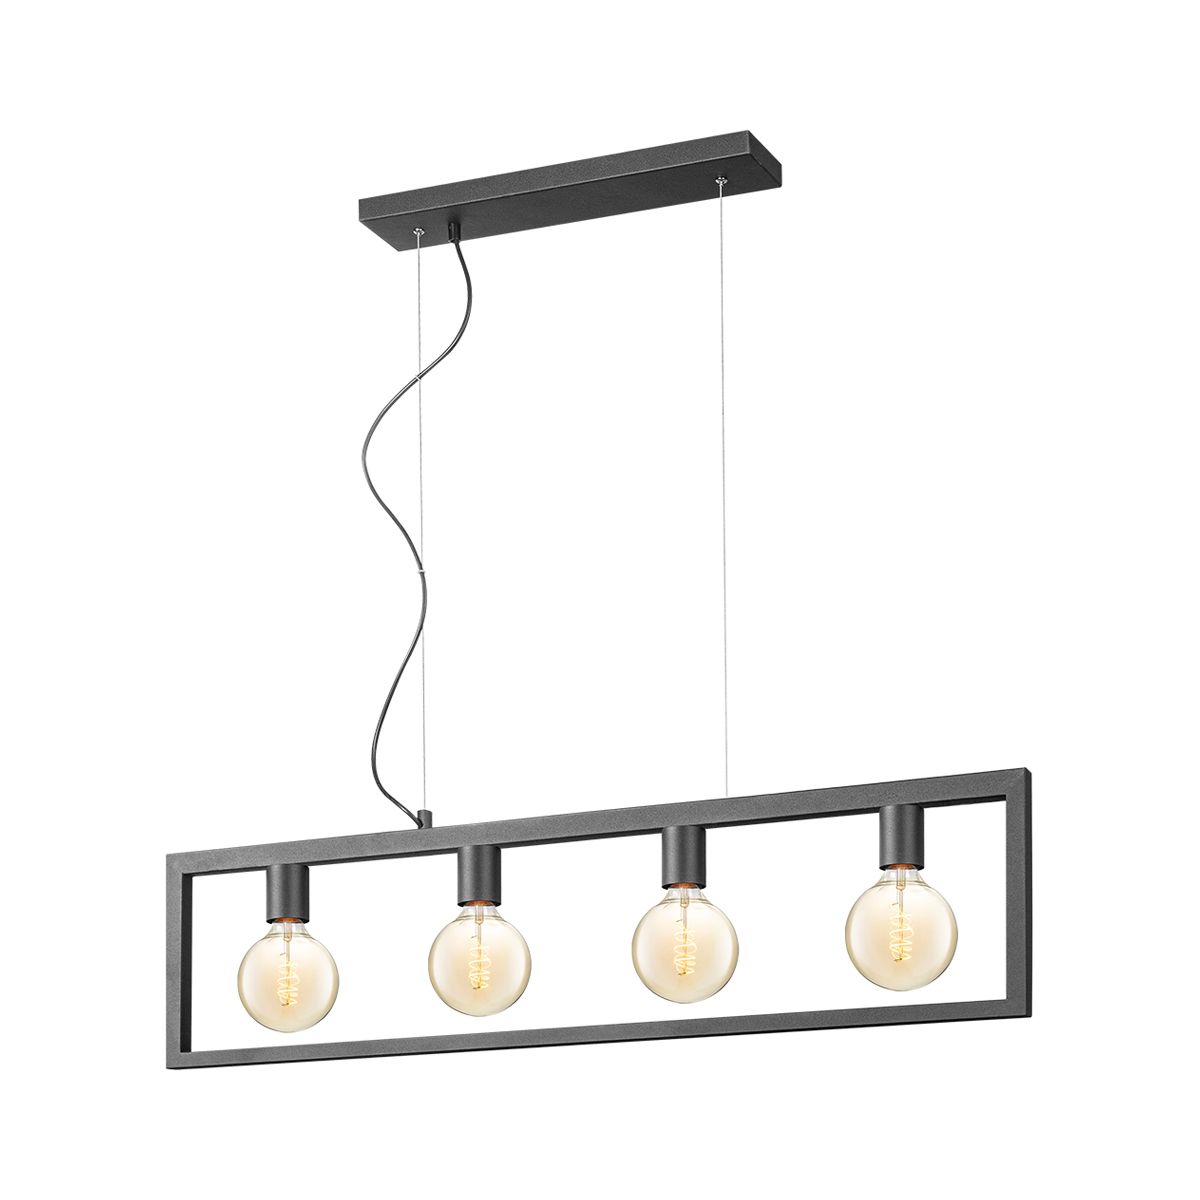 Light depot - hanglamp Fito 4L rechthoek vlak - zwart - Outlet